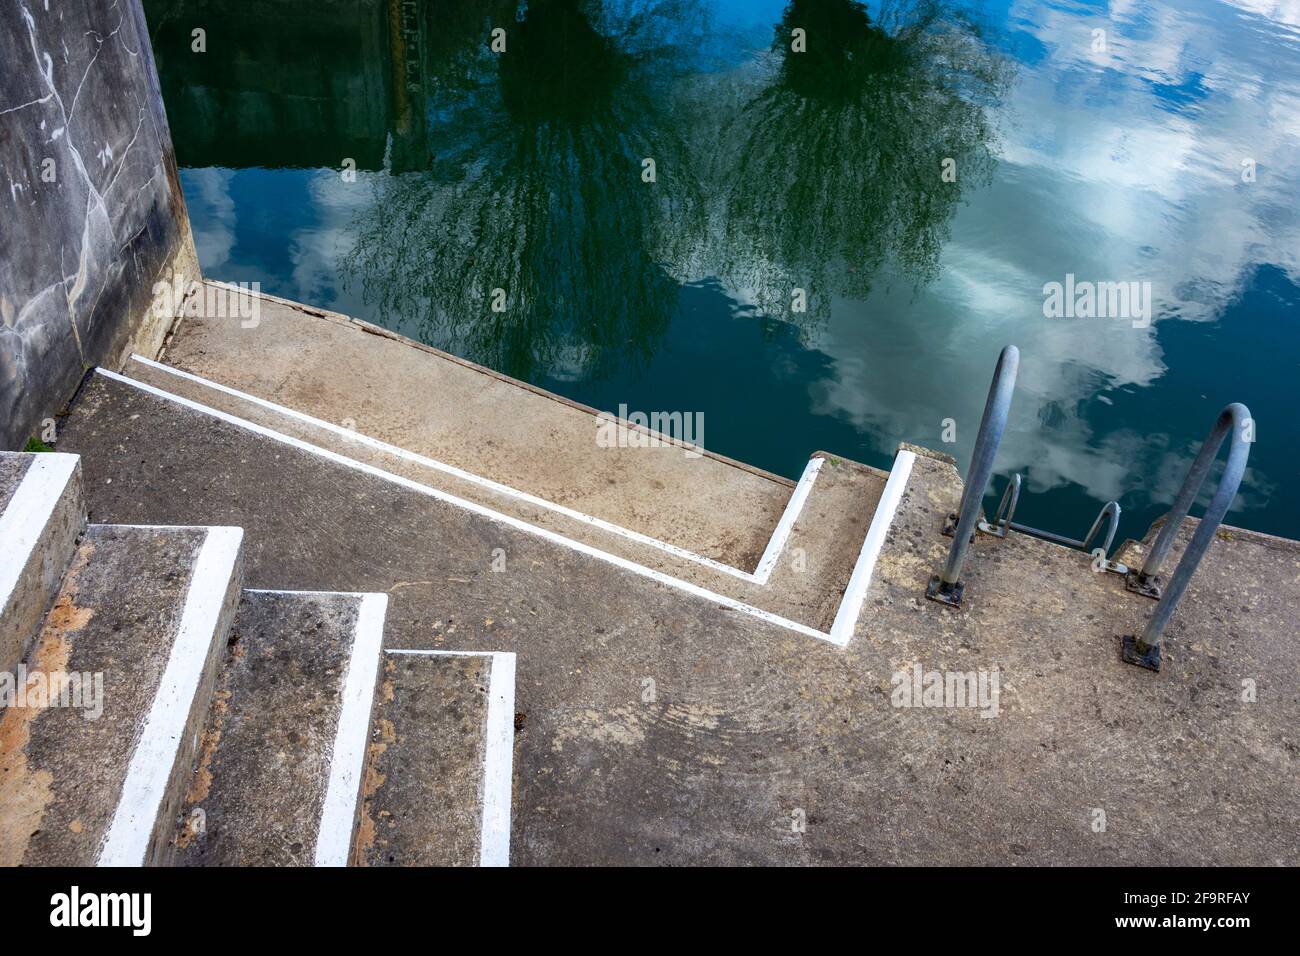 Eingang zum Kanal mit Blick auf den Kanal.die Stufen und Weiße Linien bilden ein abstraktes Textbild Stockfoto